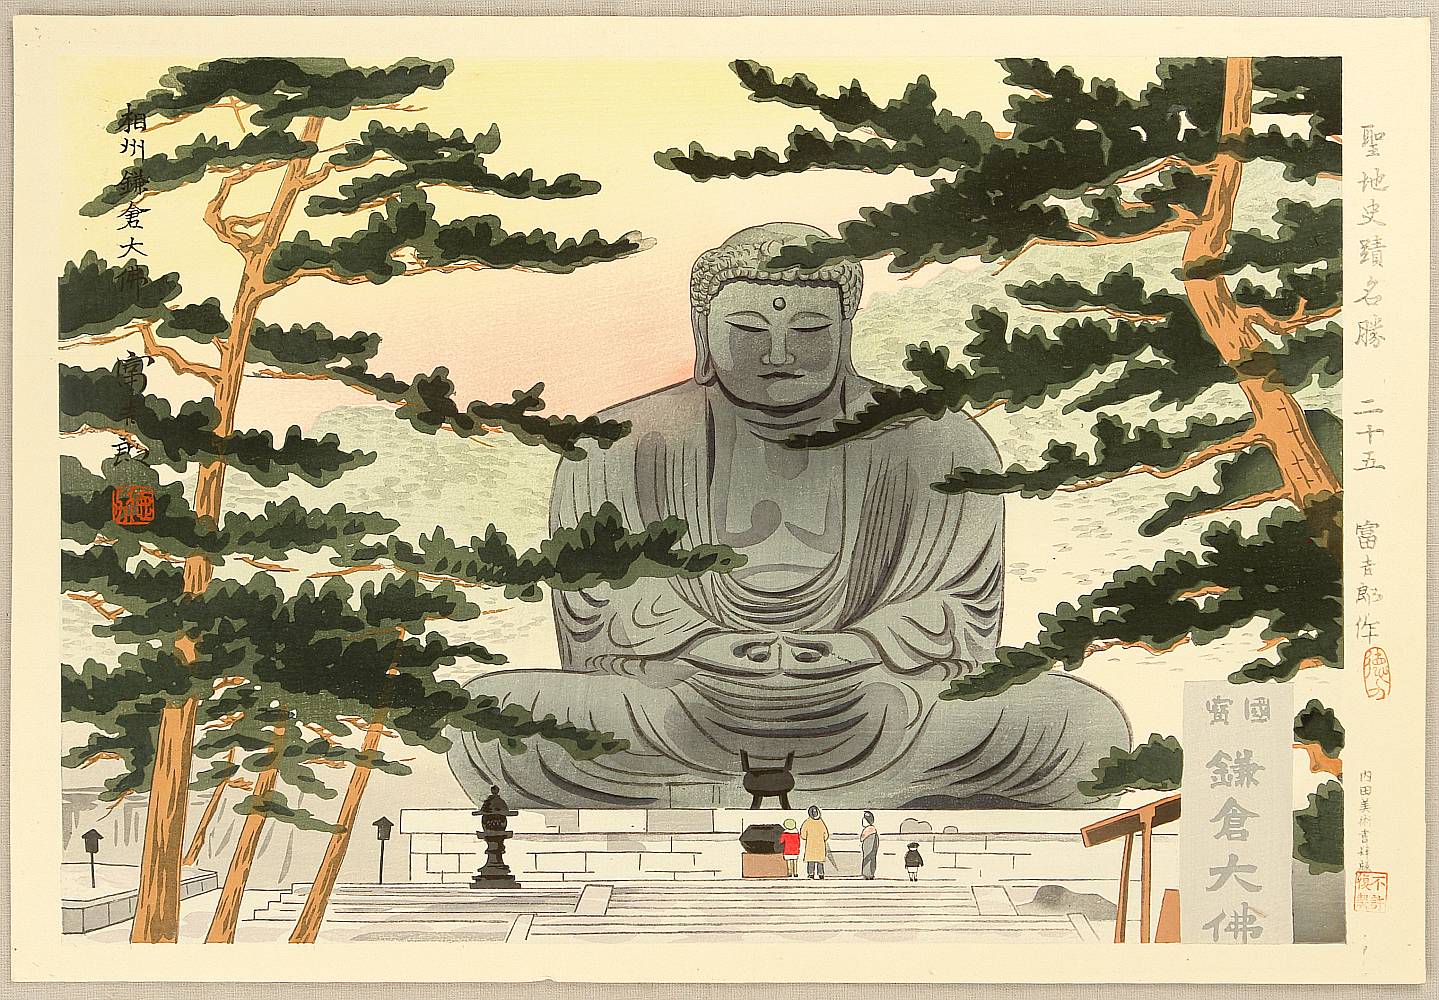 徳力富吉郎: Great Buddha at Kamakura - Artelino - 浮世絵検索